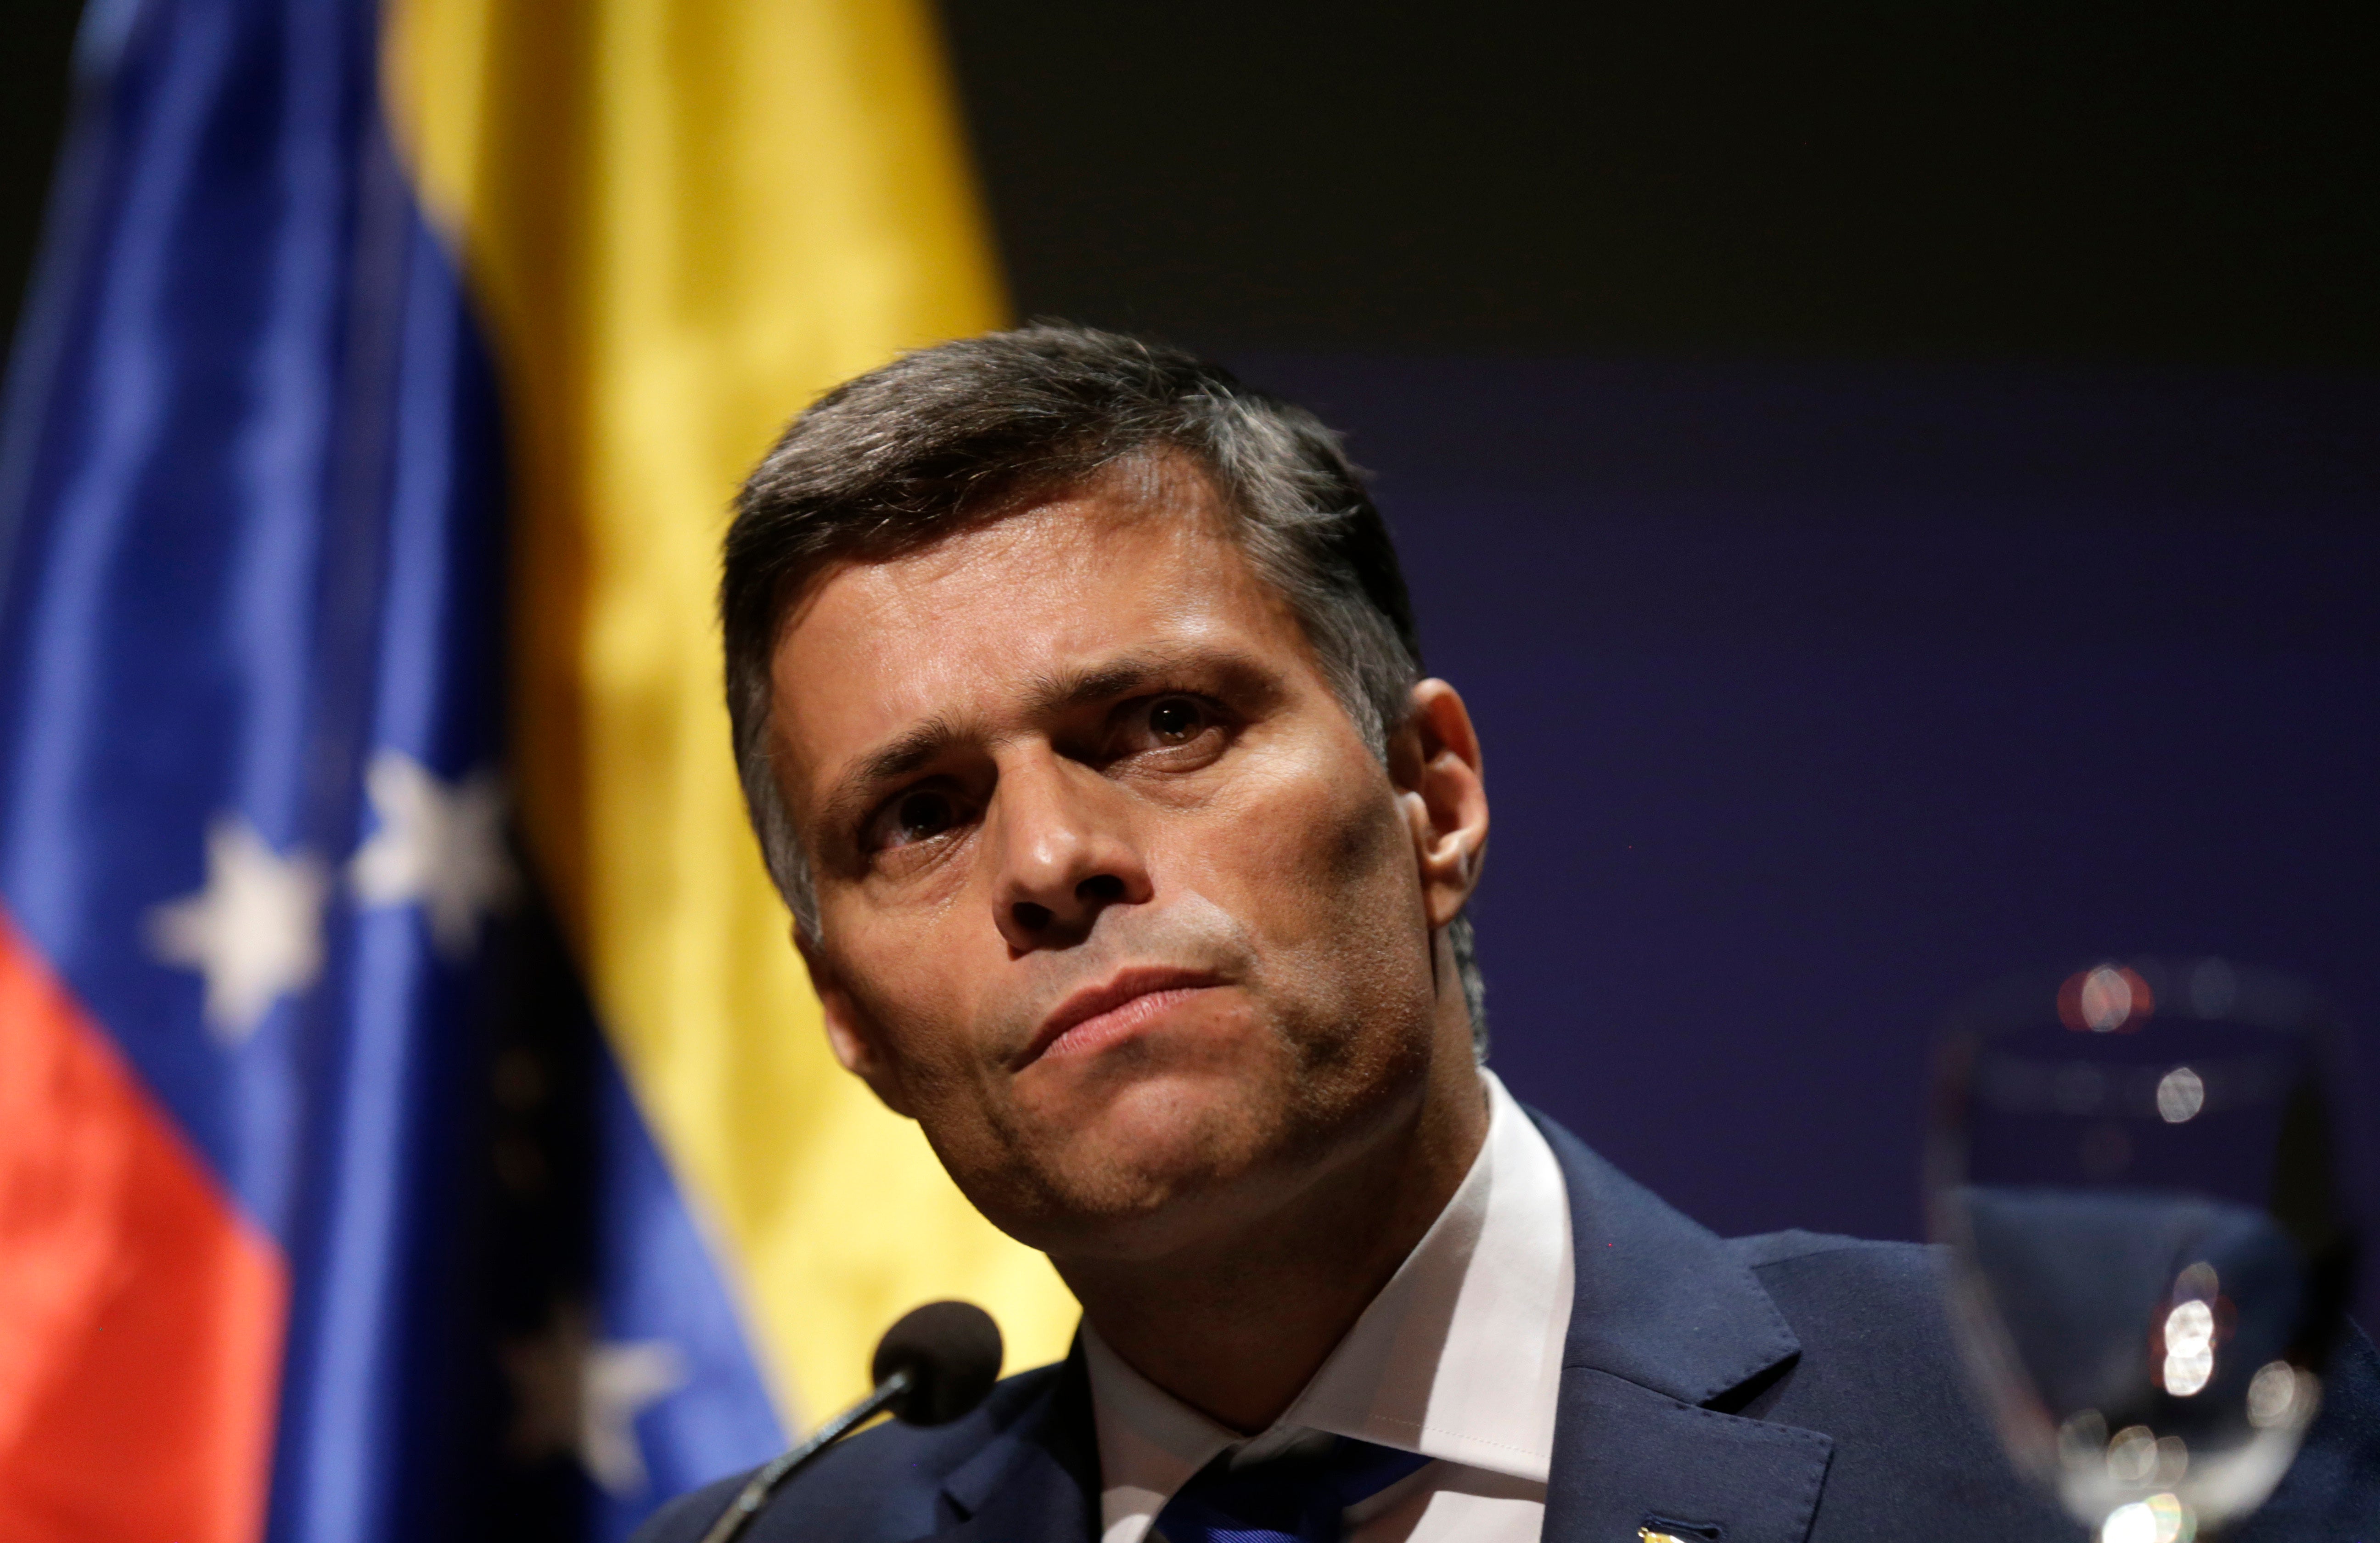 López intentó sin éxito derrocar al gobierno de Nicolás Maduro con la ayuda de Estados Unidos en 2019